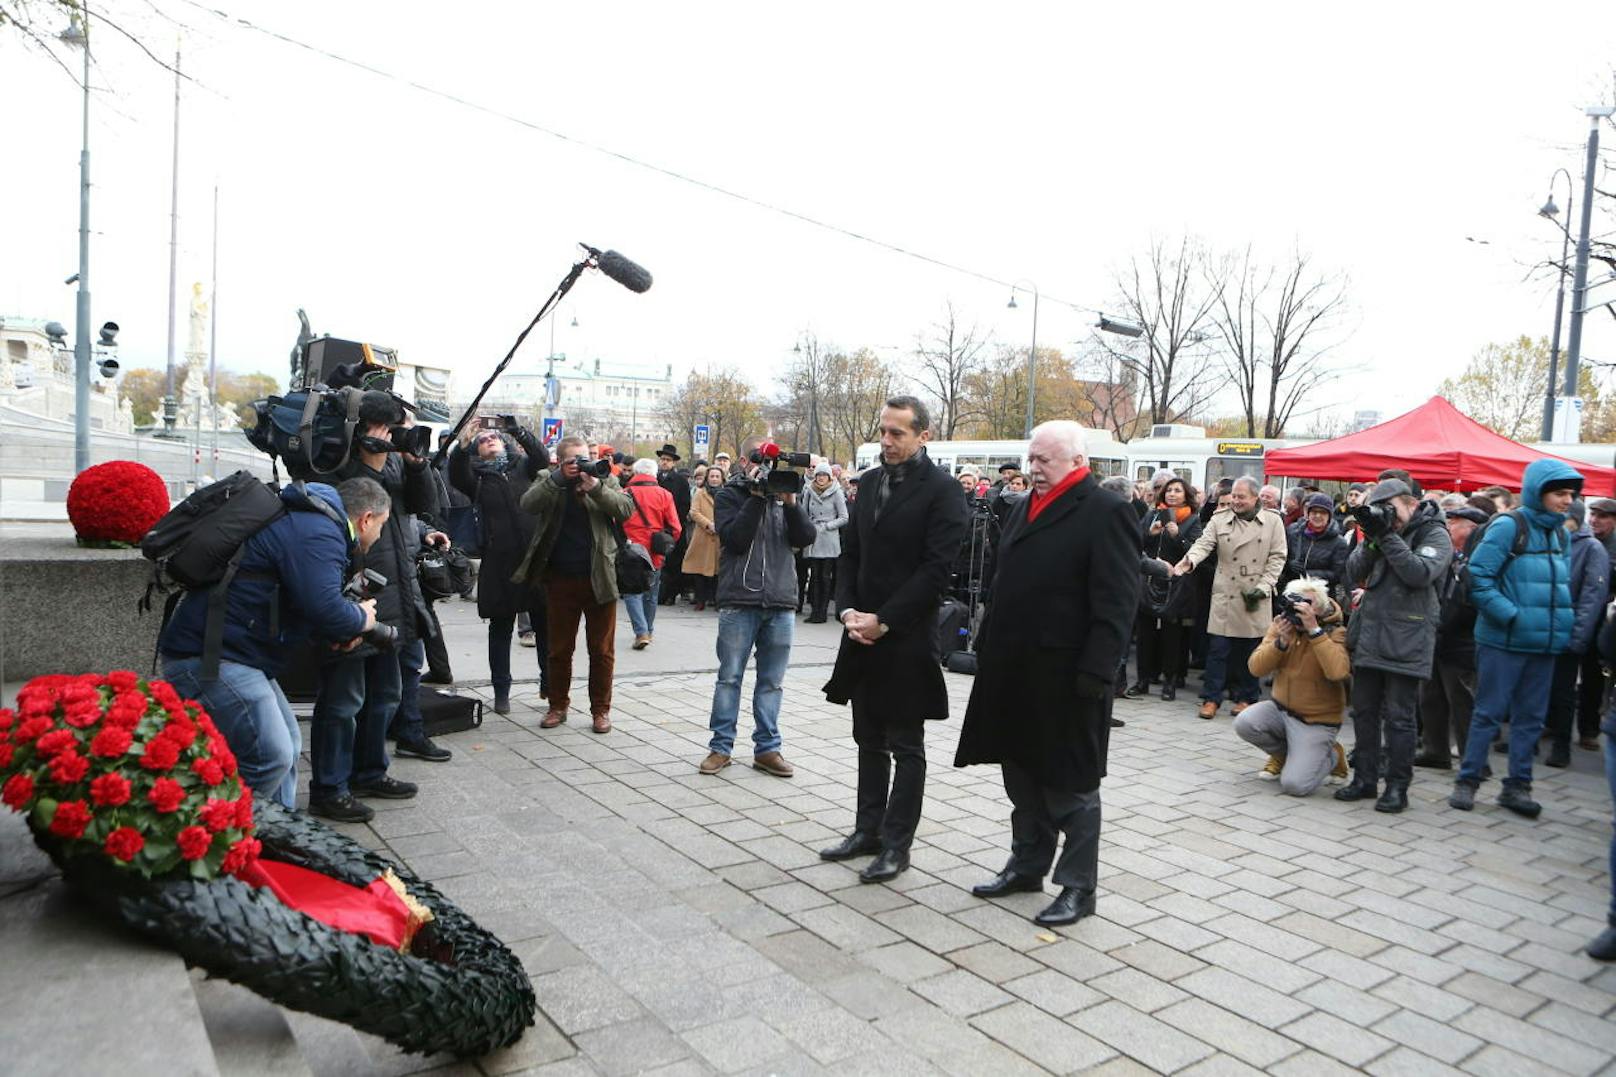 Bundesparteichef Christian Kern und Bürgermeister Michael Häupl legten vor dem Denkmal einen Krank nieder.